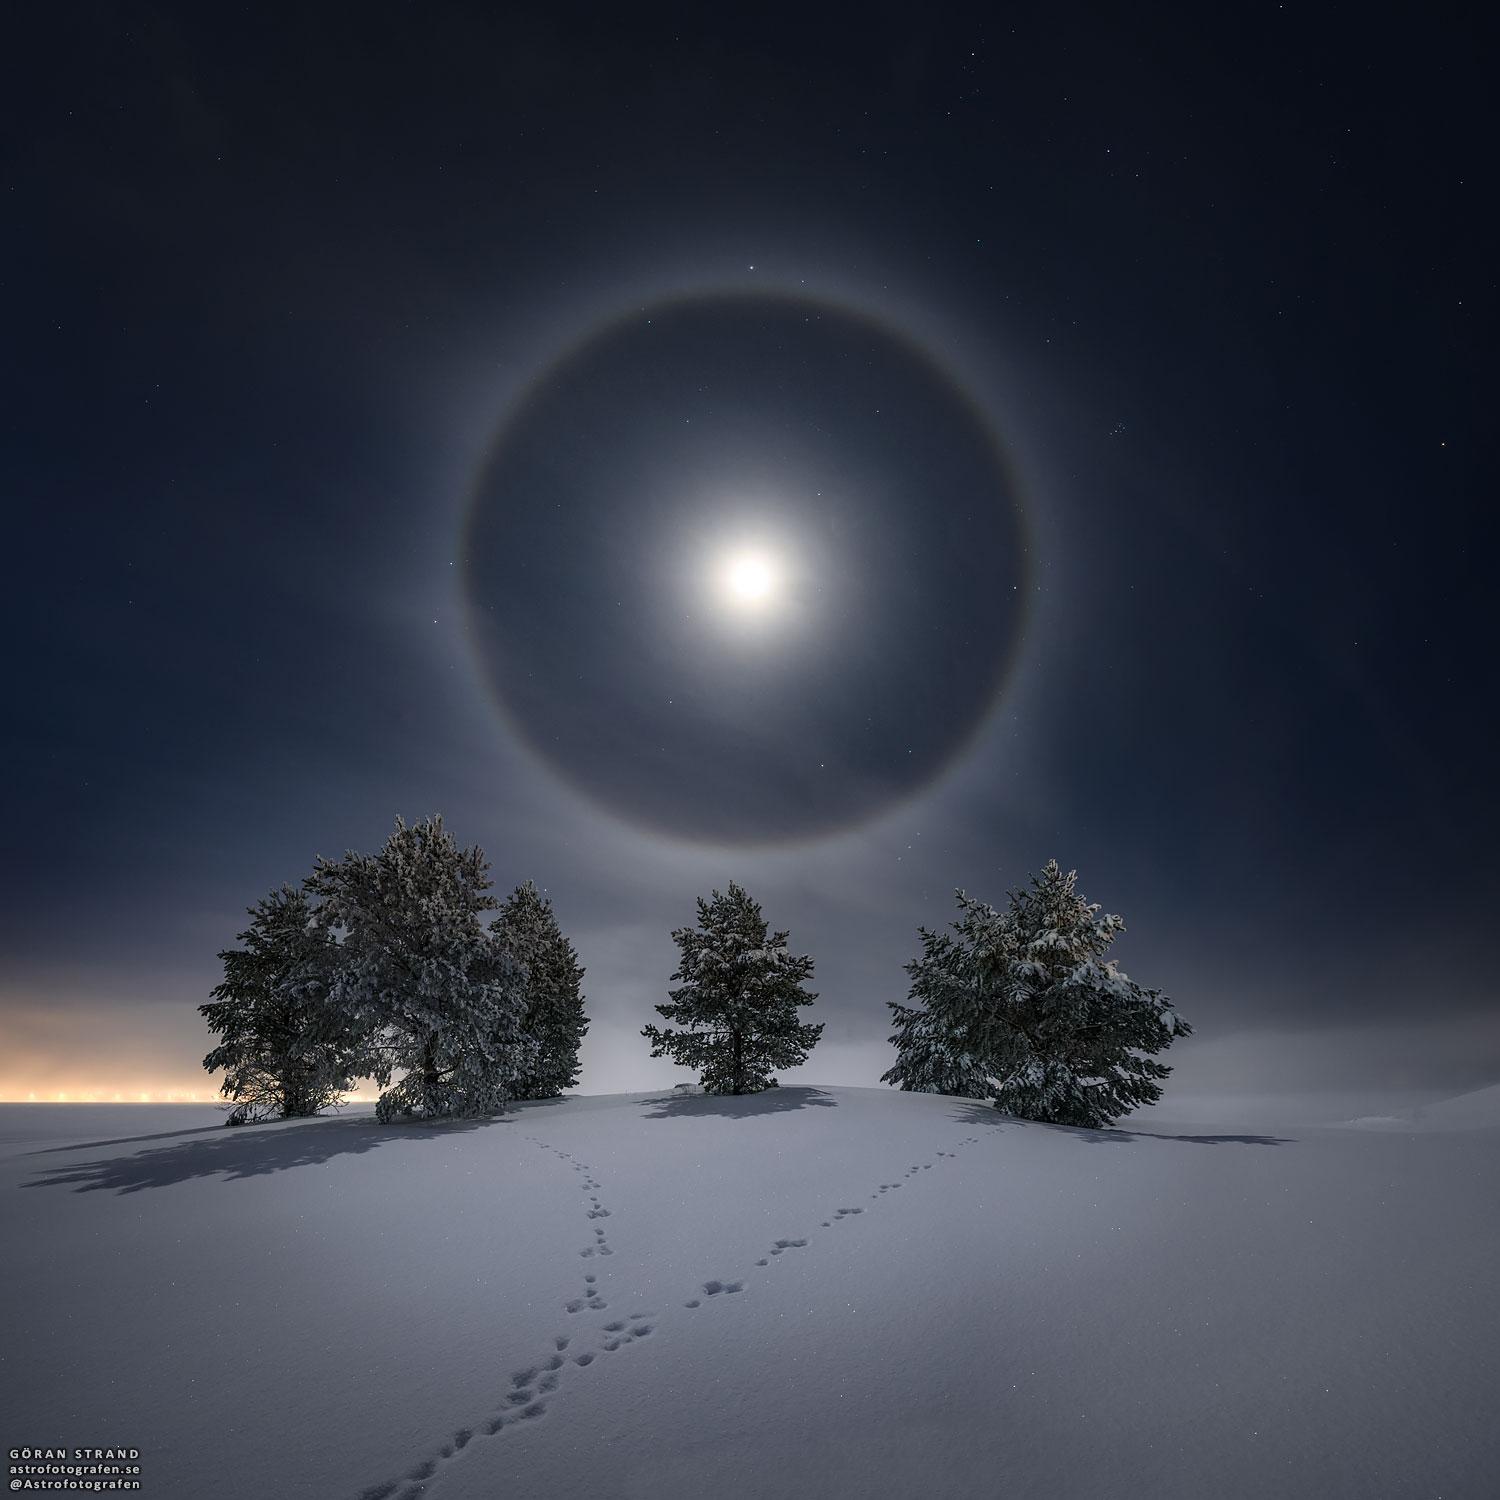 صورة ليليّة تُظهر هالة قمرية كاملة تحيط بقمرِ شبه مكتمل، ومن تحتها عدّة أشجار مكسوّة بالثلوج وآثار أقدام أرانب على الثلج الذي يغطّي الأرض.